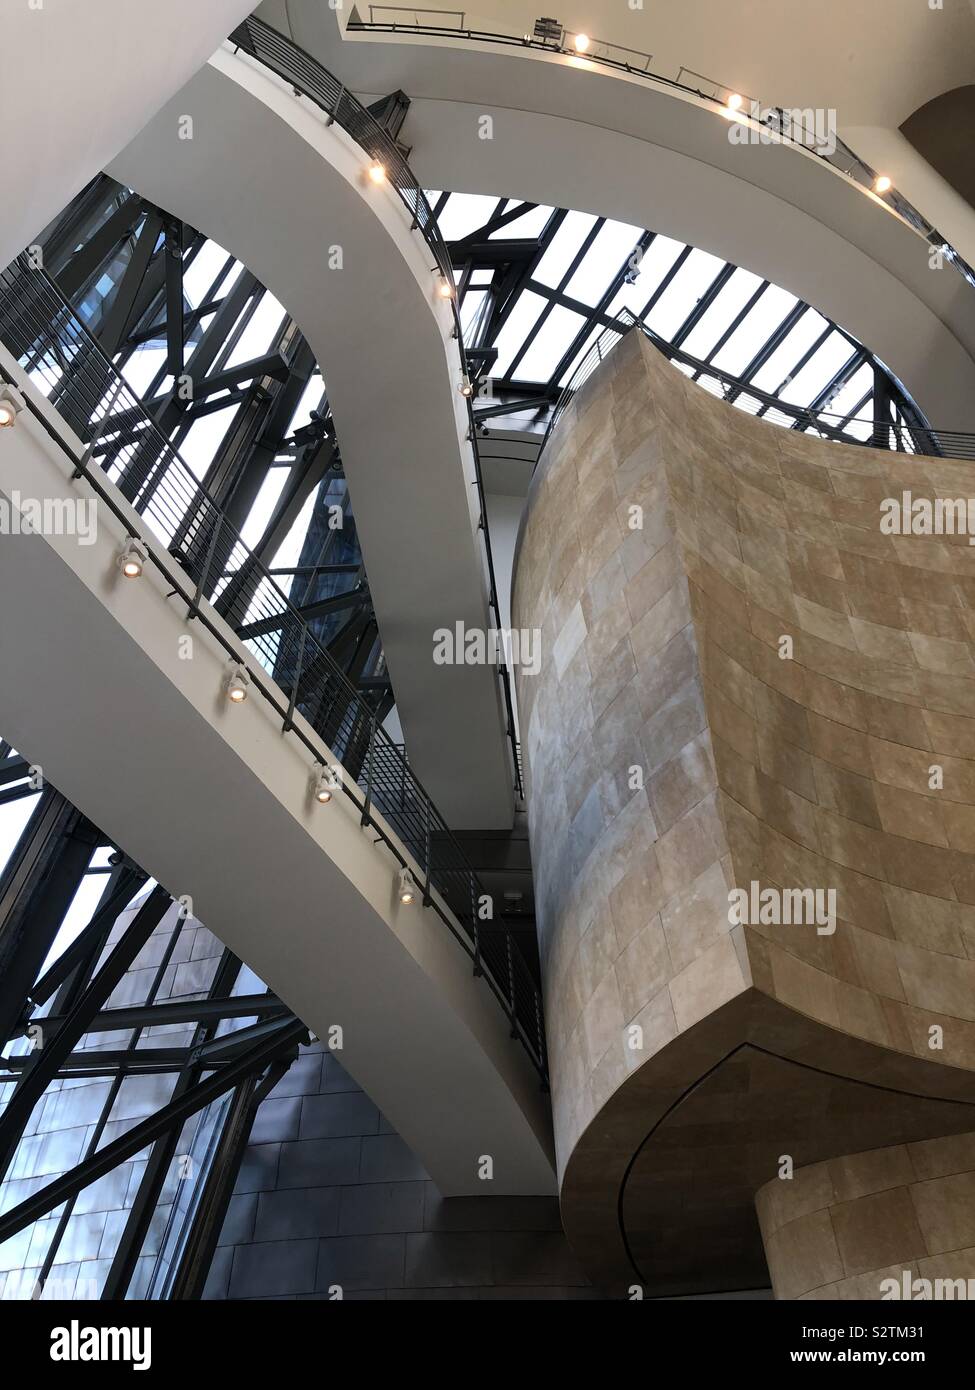 Musée Guggenheim Bilbao - art moderne et contemporain conçu par l'architecte Frank Gehry, situé à Bilbao, Pays Basque, Espagne. Banque D'Images